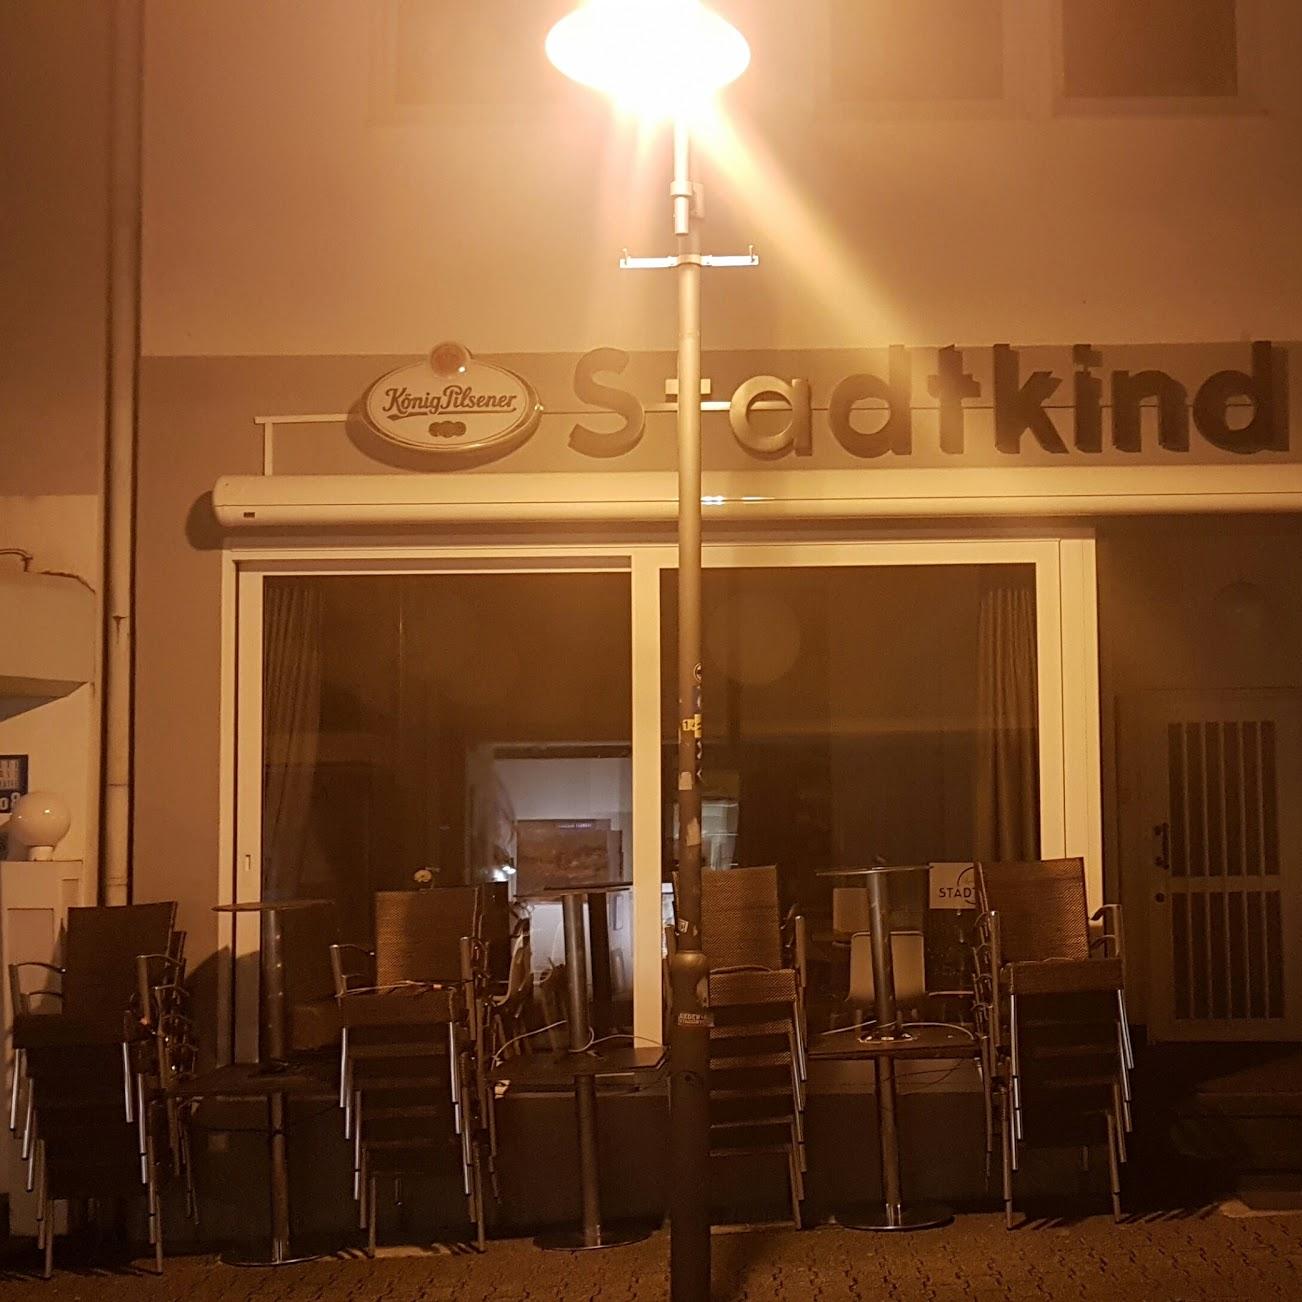 Restaurant "Stadtkind" in Siegen